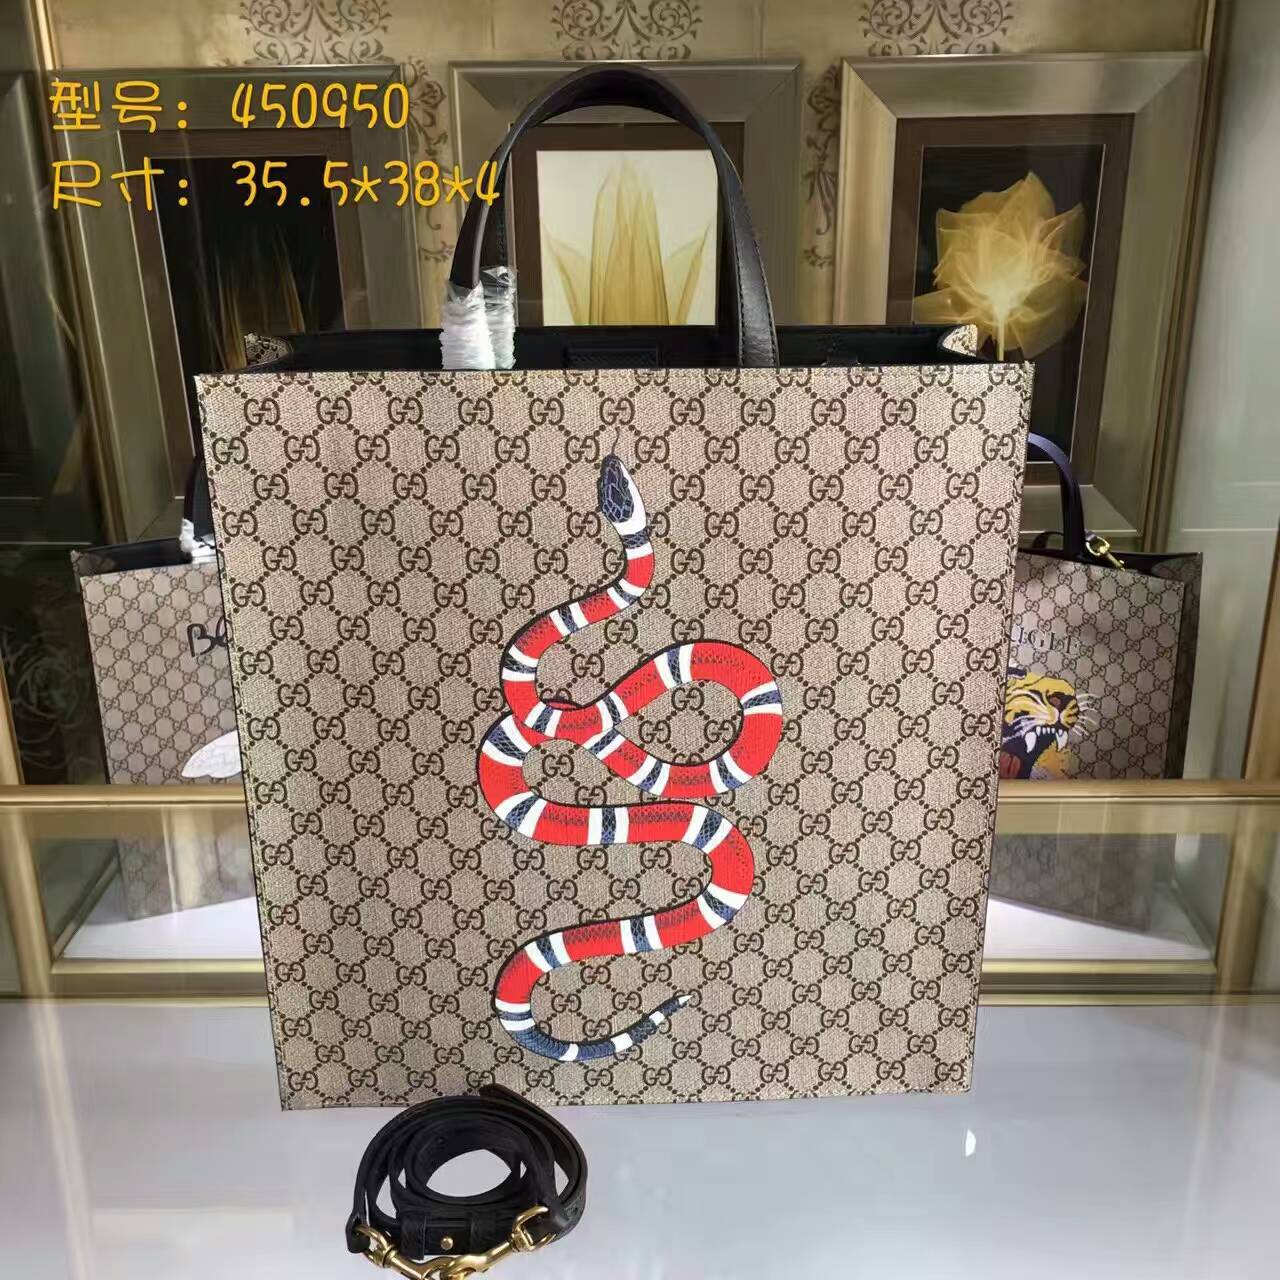 Gucci Tiger print soft GG Supreme tote-450950-txgc022(6)